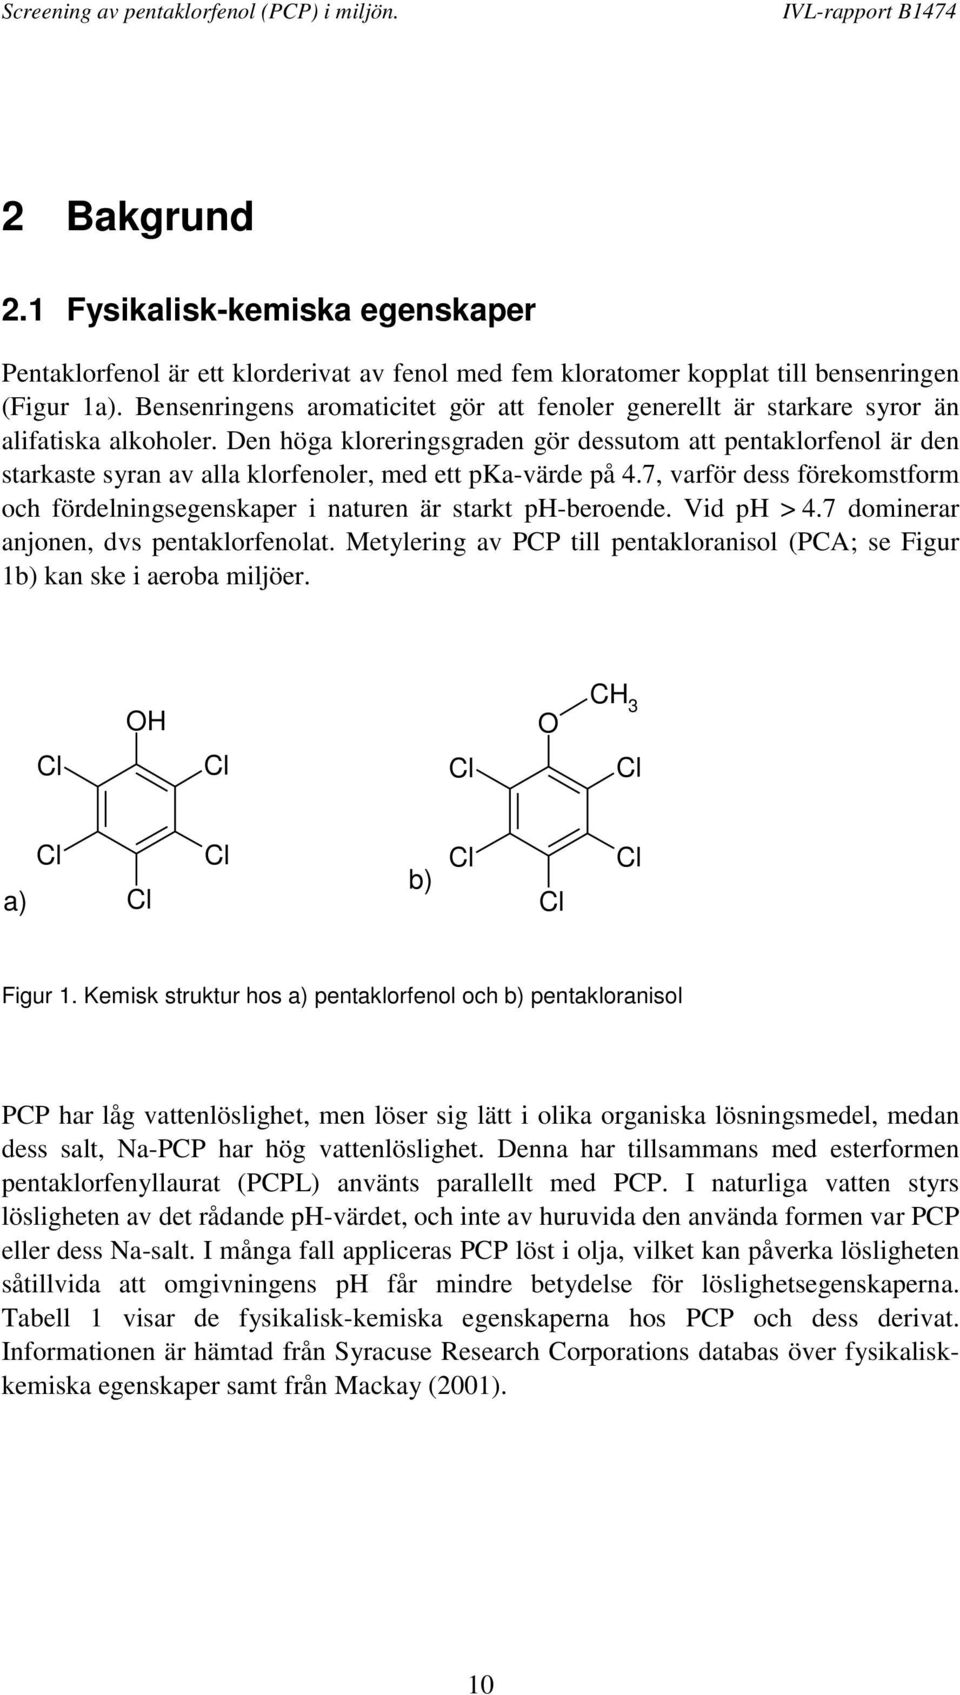 Den höga kloreringsgraden gör dessutom att pentaklorfenol är den starkaste syran av alla klorfenoler, med ett pka-värde på 4.